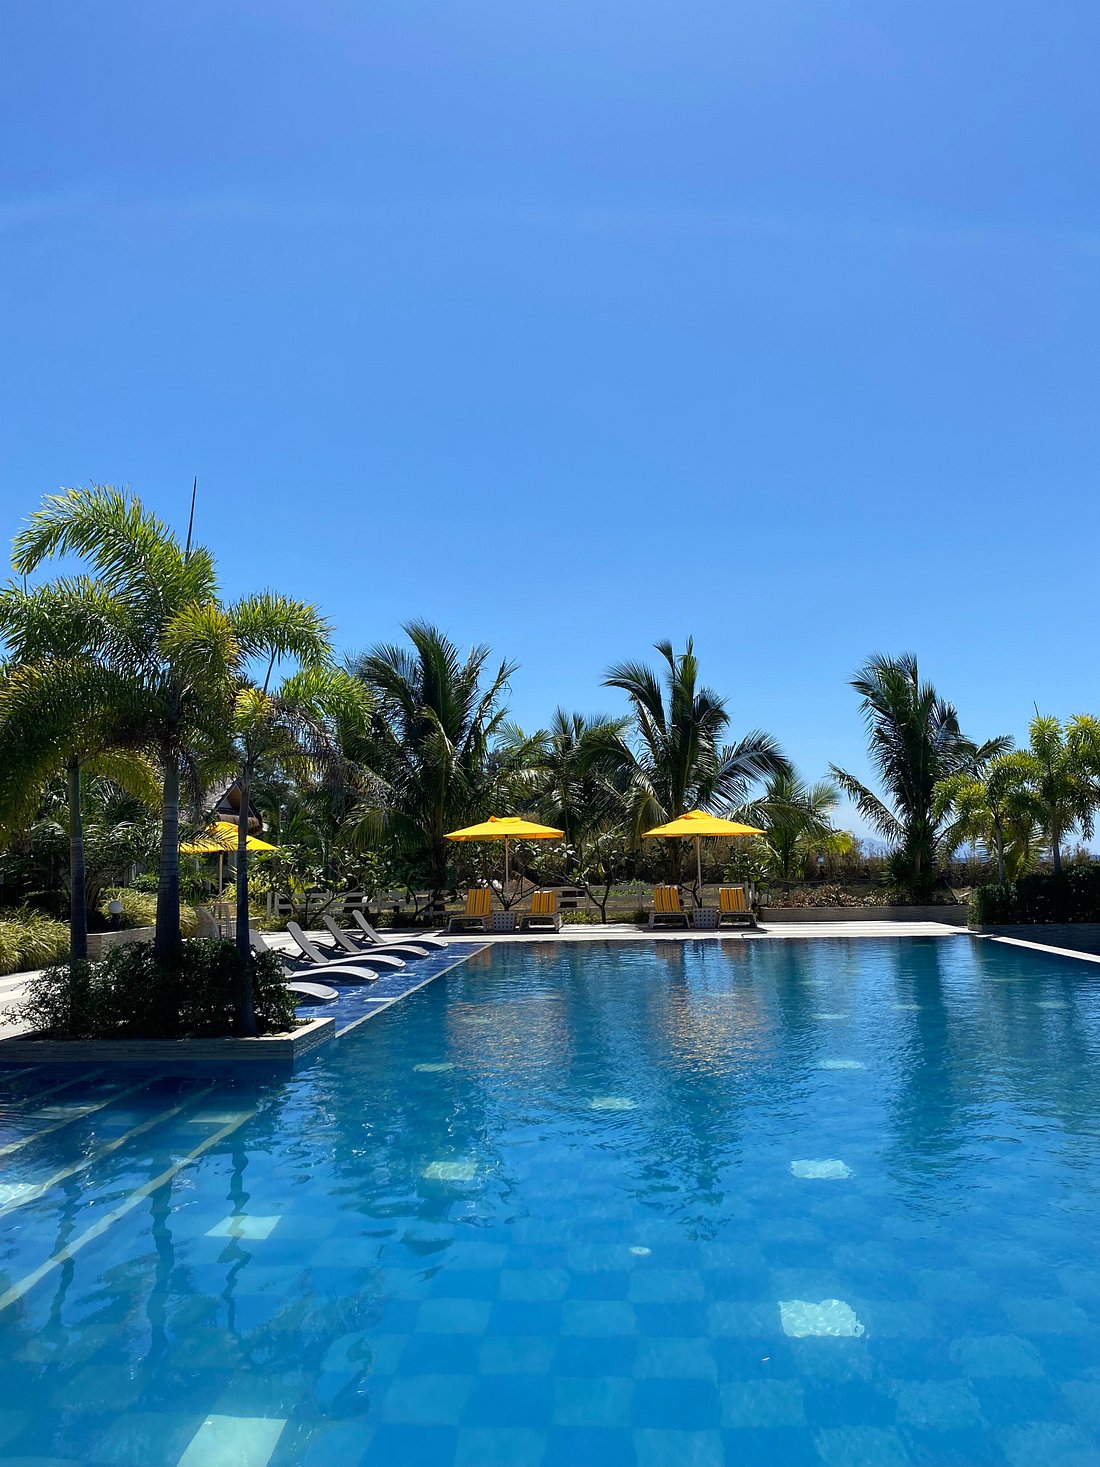 Haya Nature Resort Pool Pictures And Reviews Tripadvisor 6868